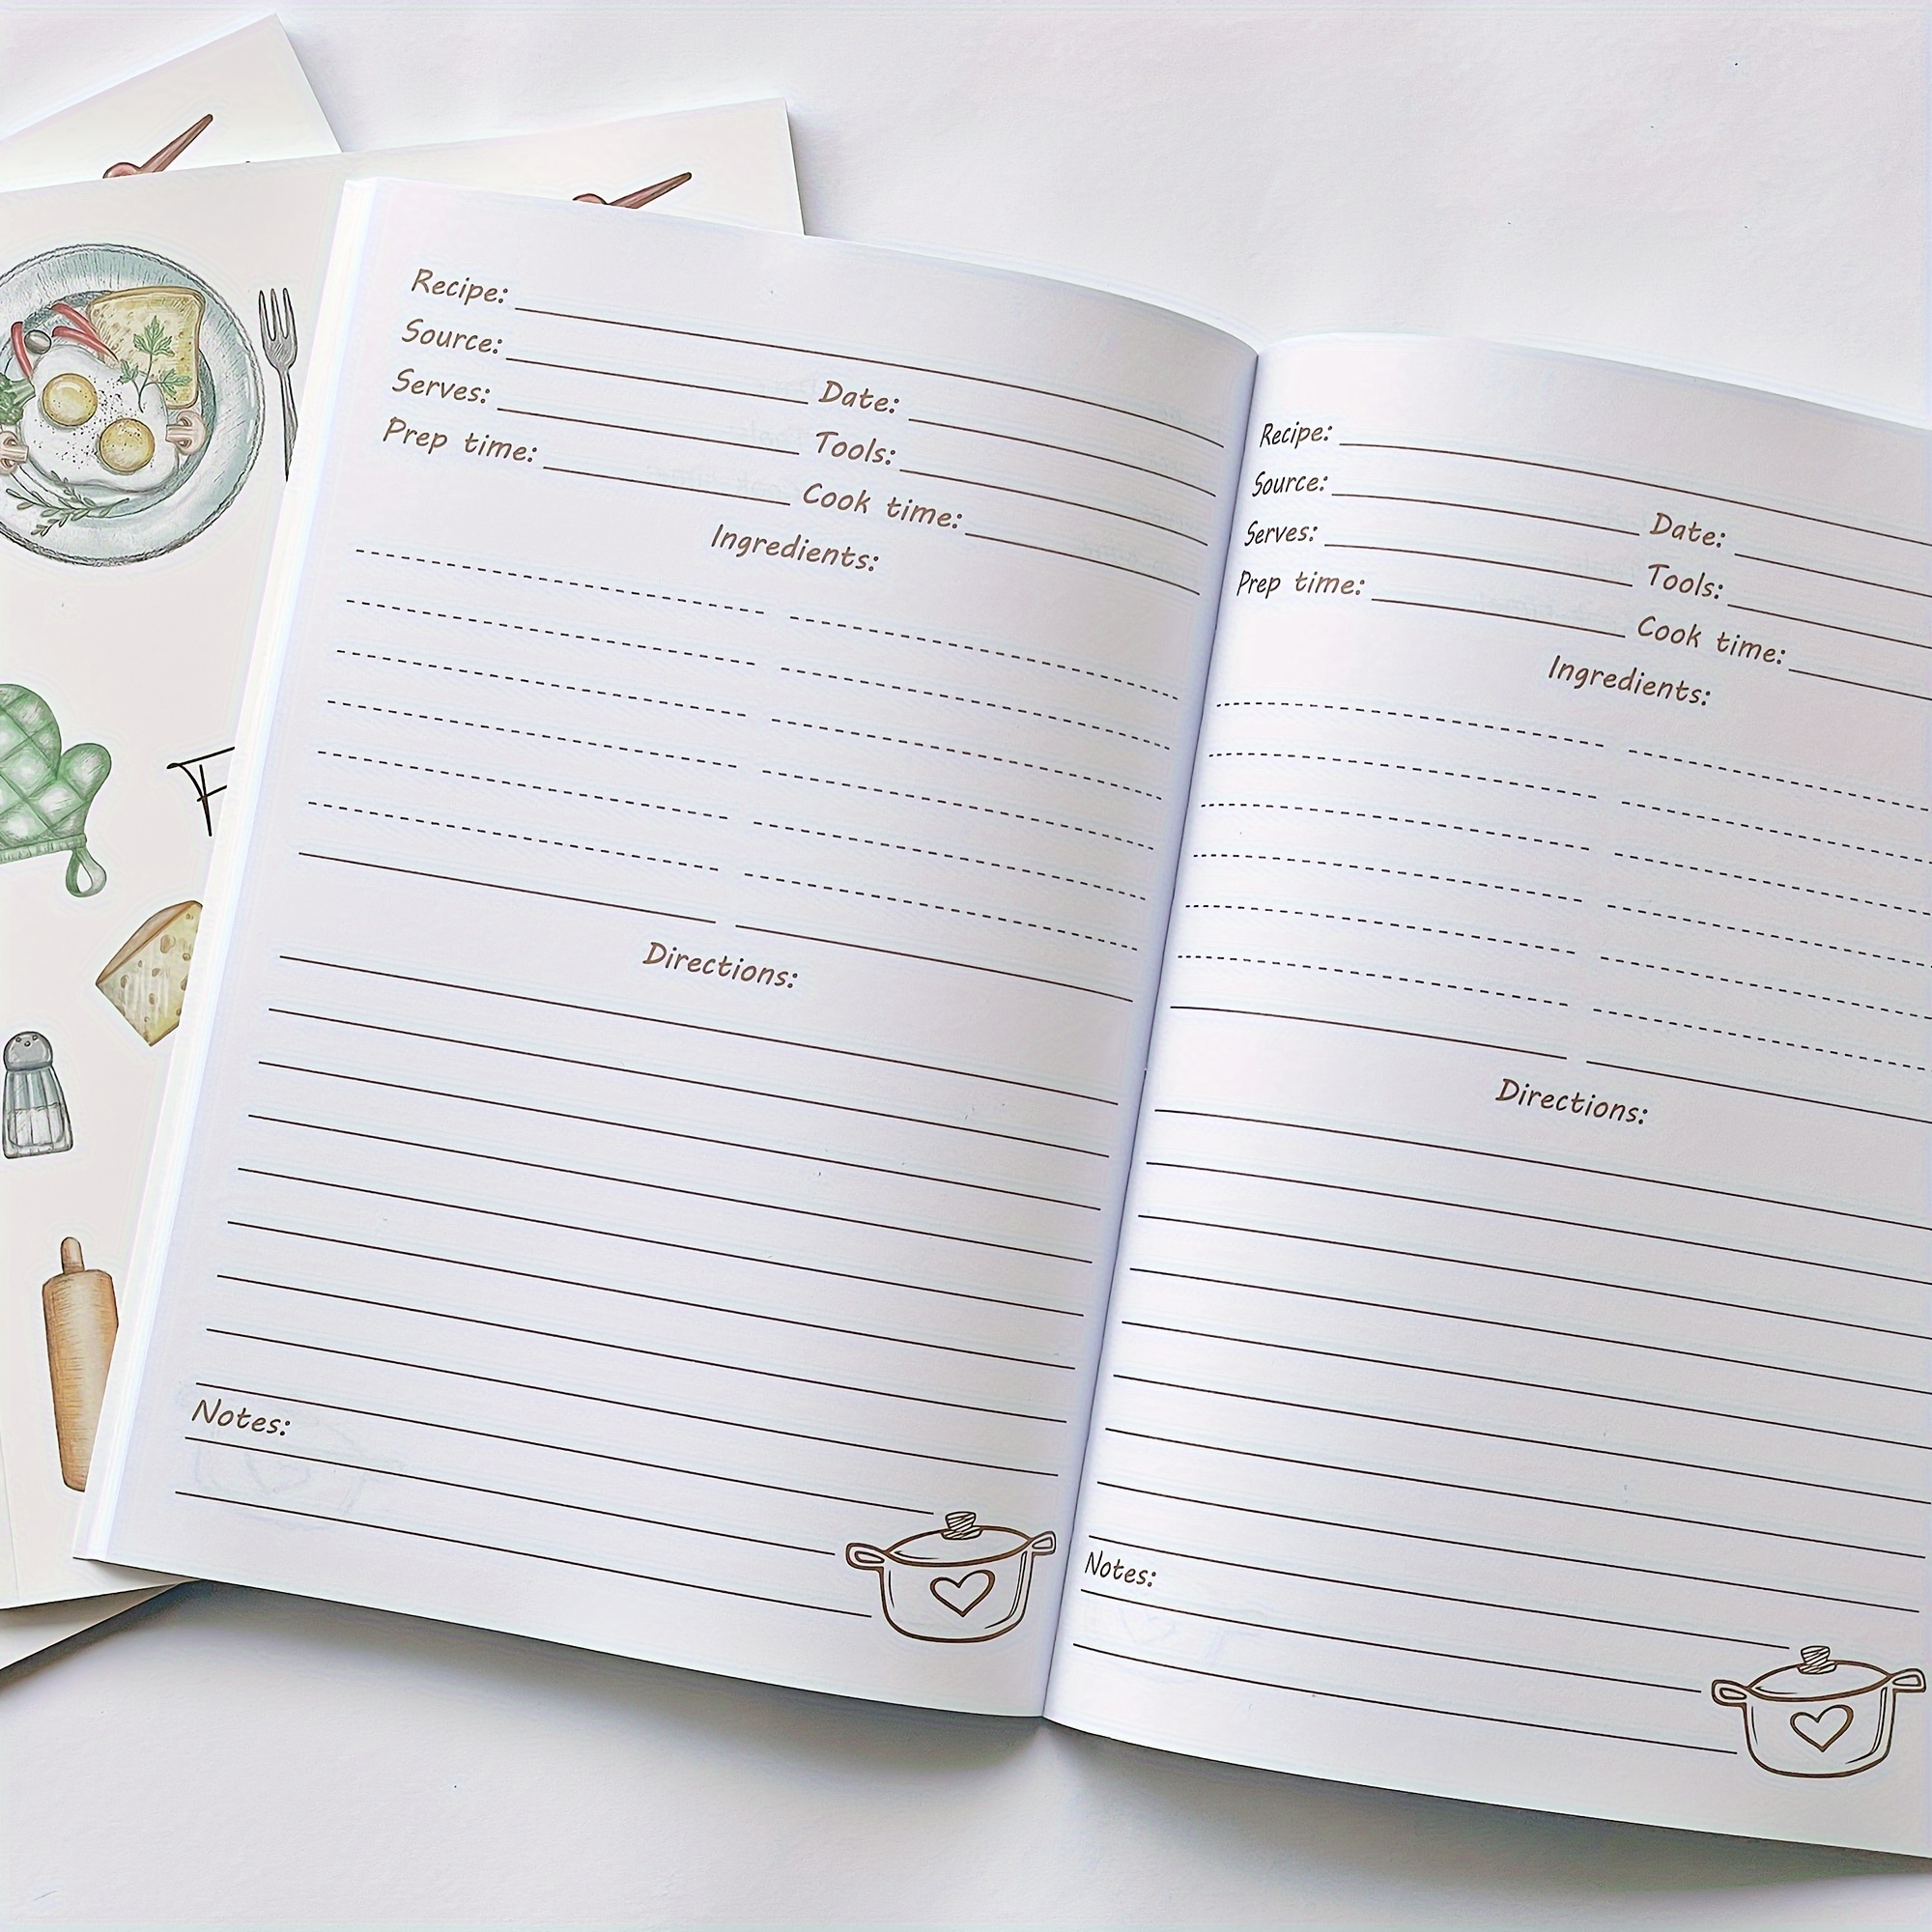 Cuadernos de recetas: guardar la cocina familiar